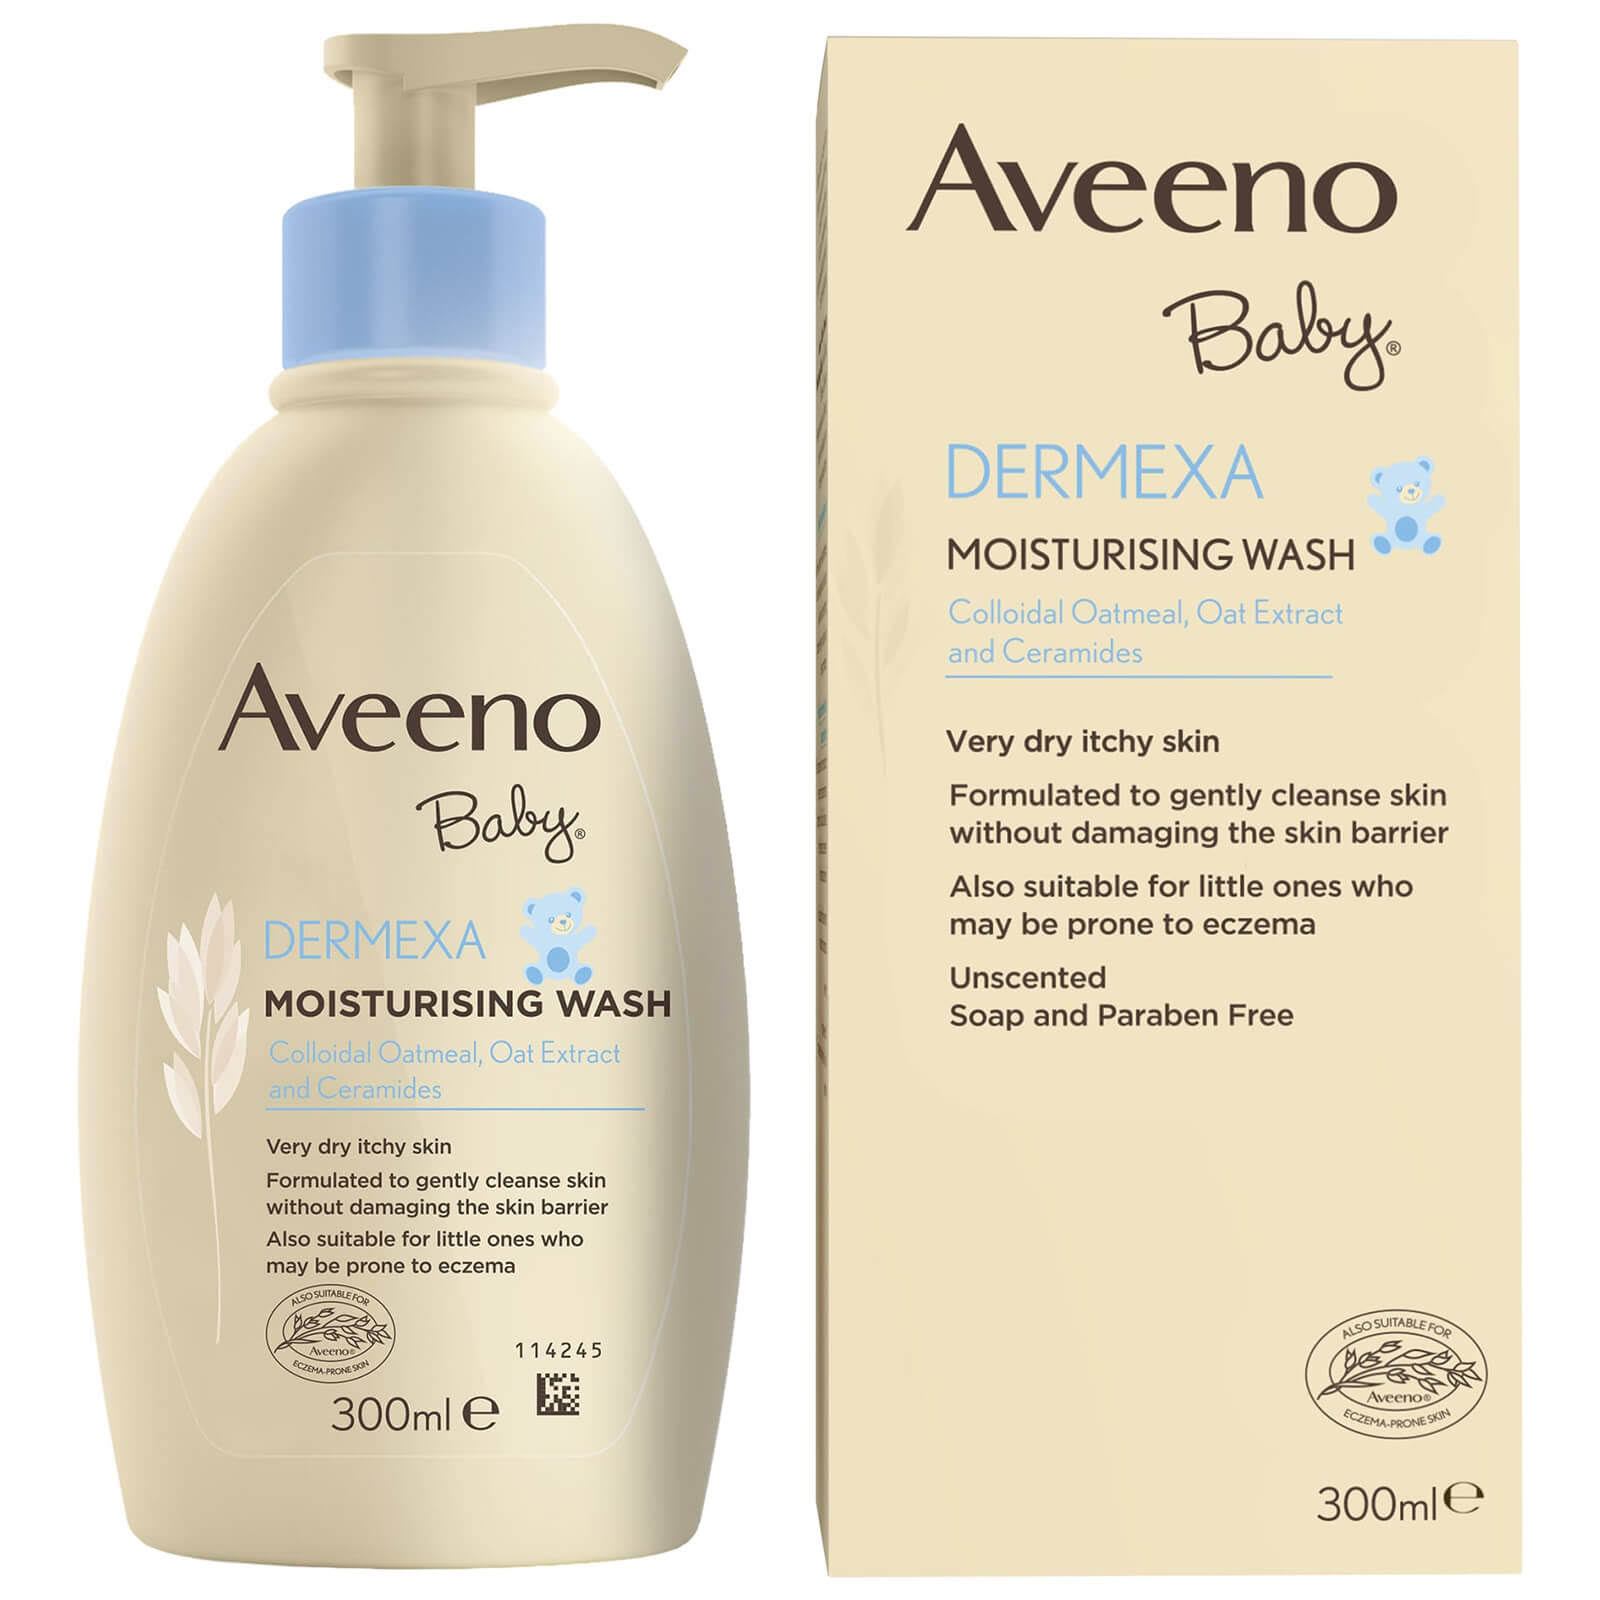 Aveeno Baby Dermexa Moisturising Wash - 300ml